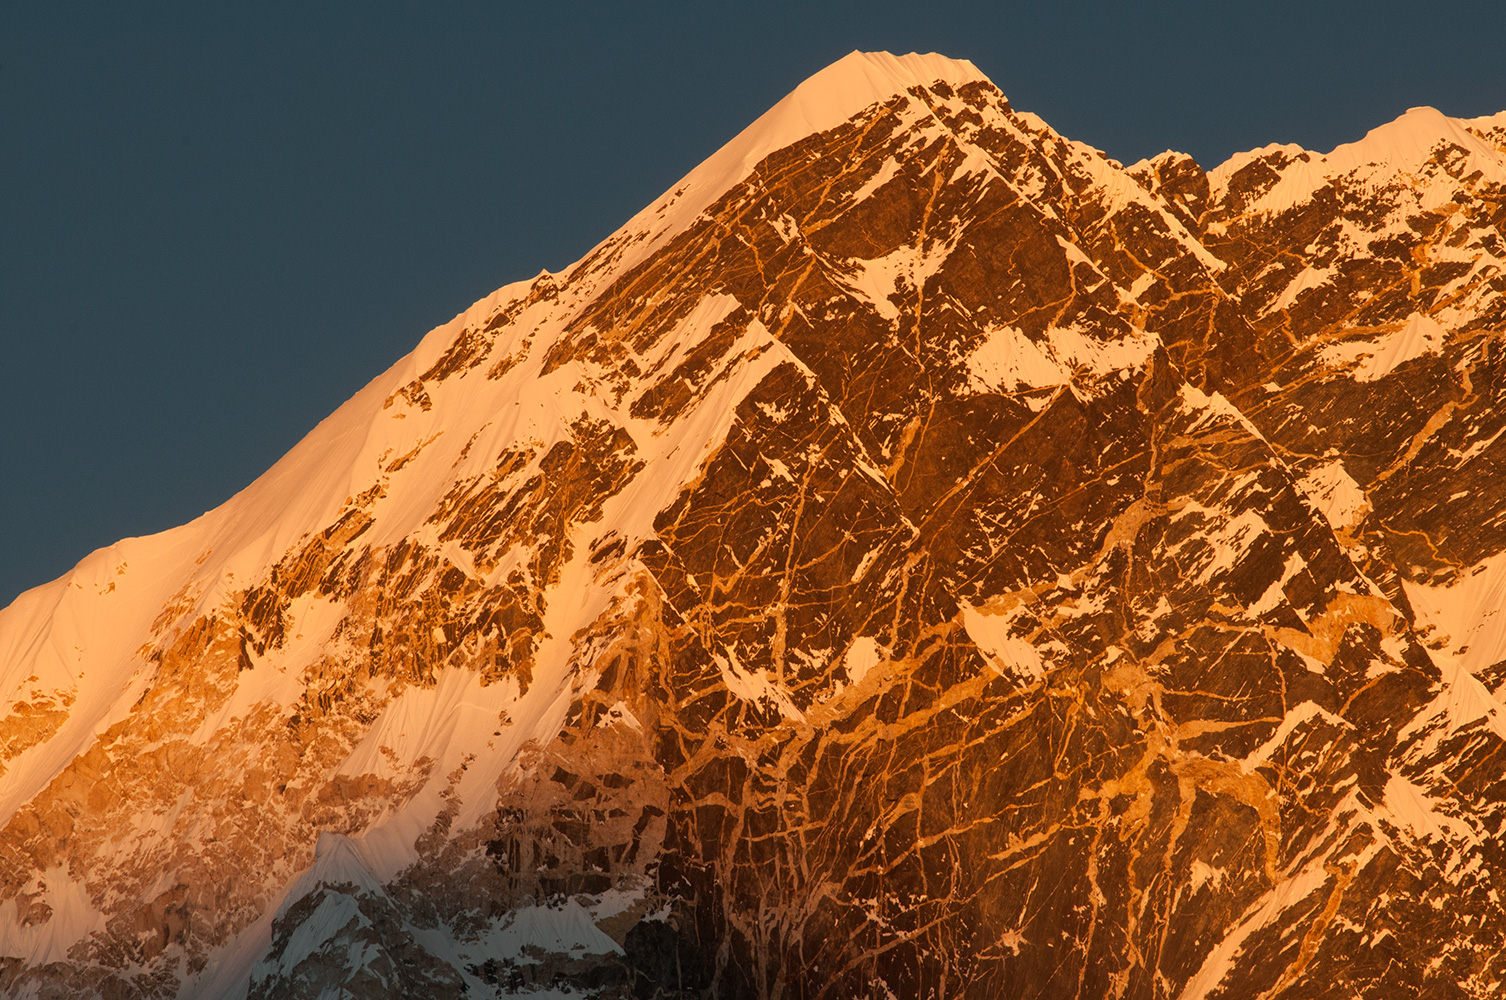 The summit at sunset from Kala PattarNikon D300, 180mm